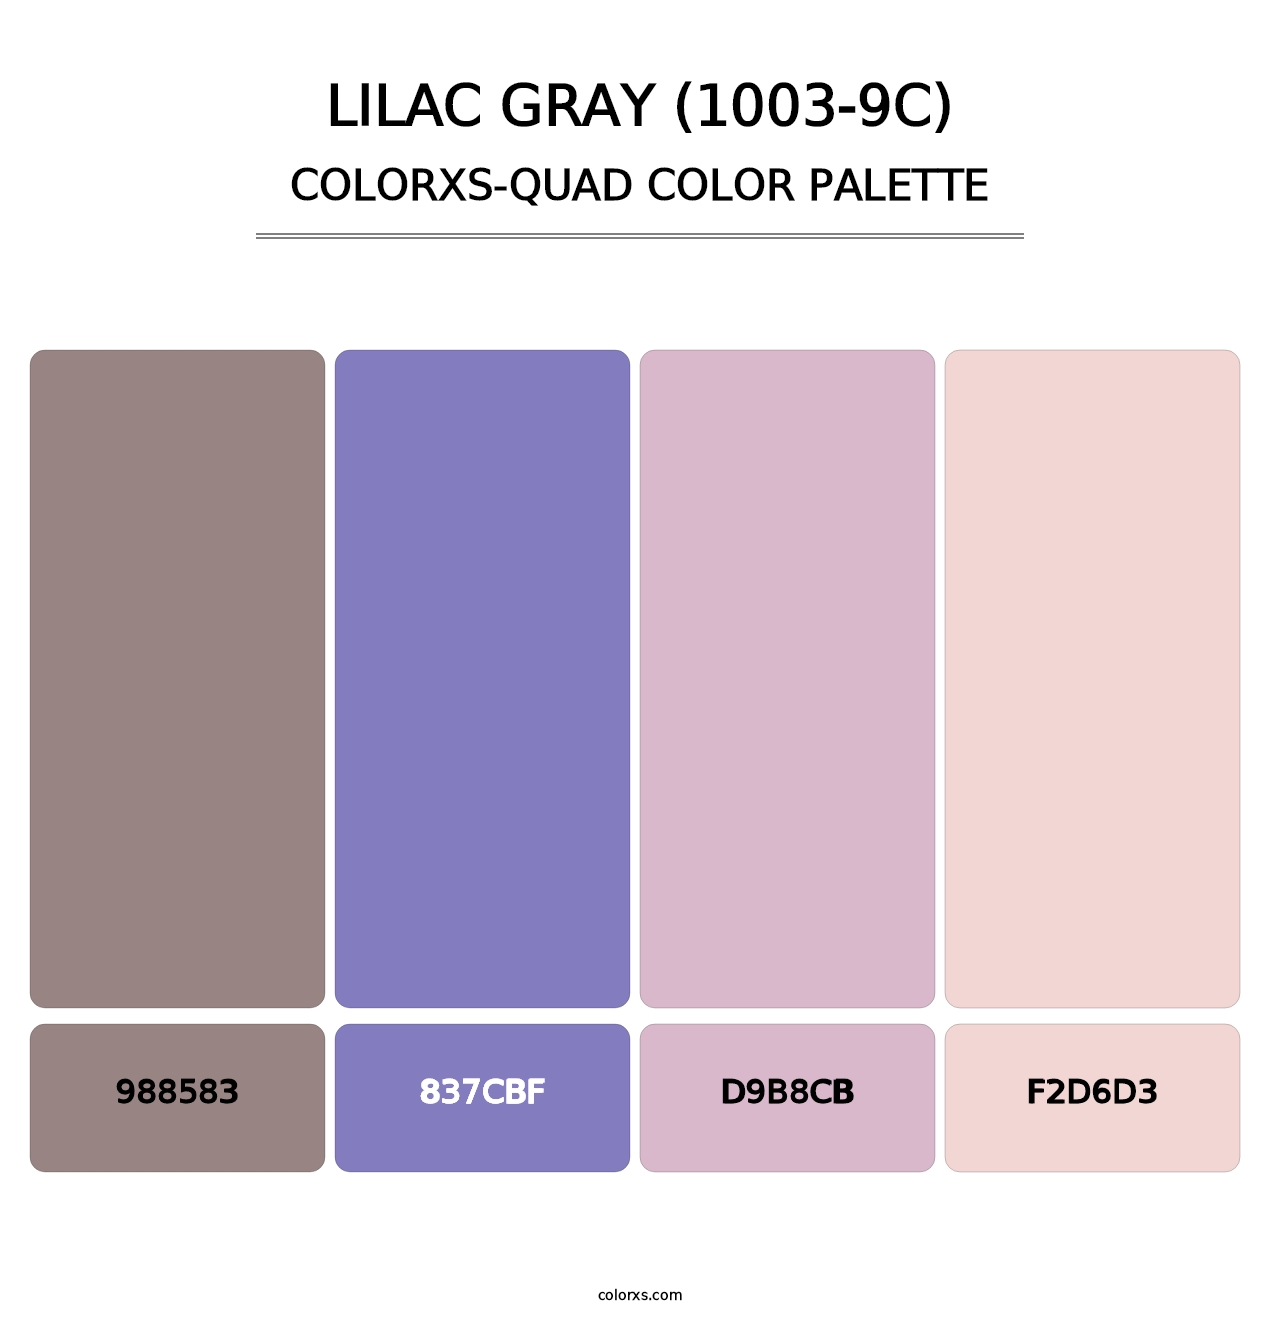 Lilac Gray (1003-9C) - Colorxs Quad Palette